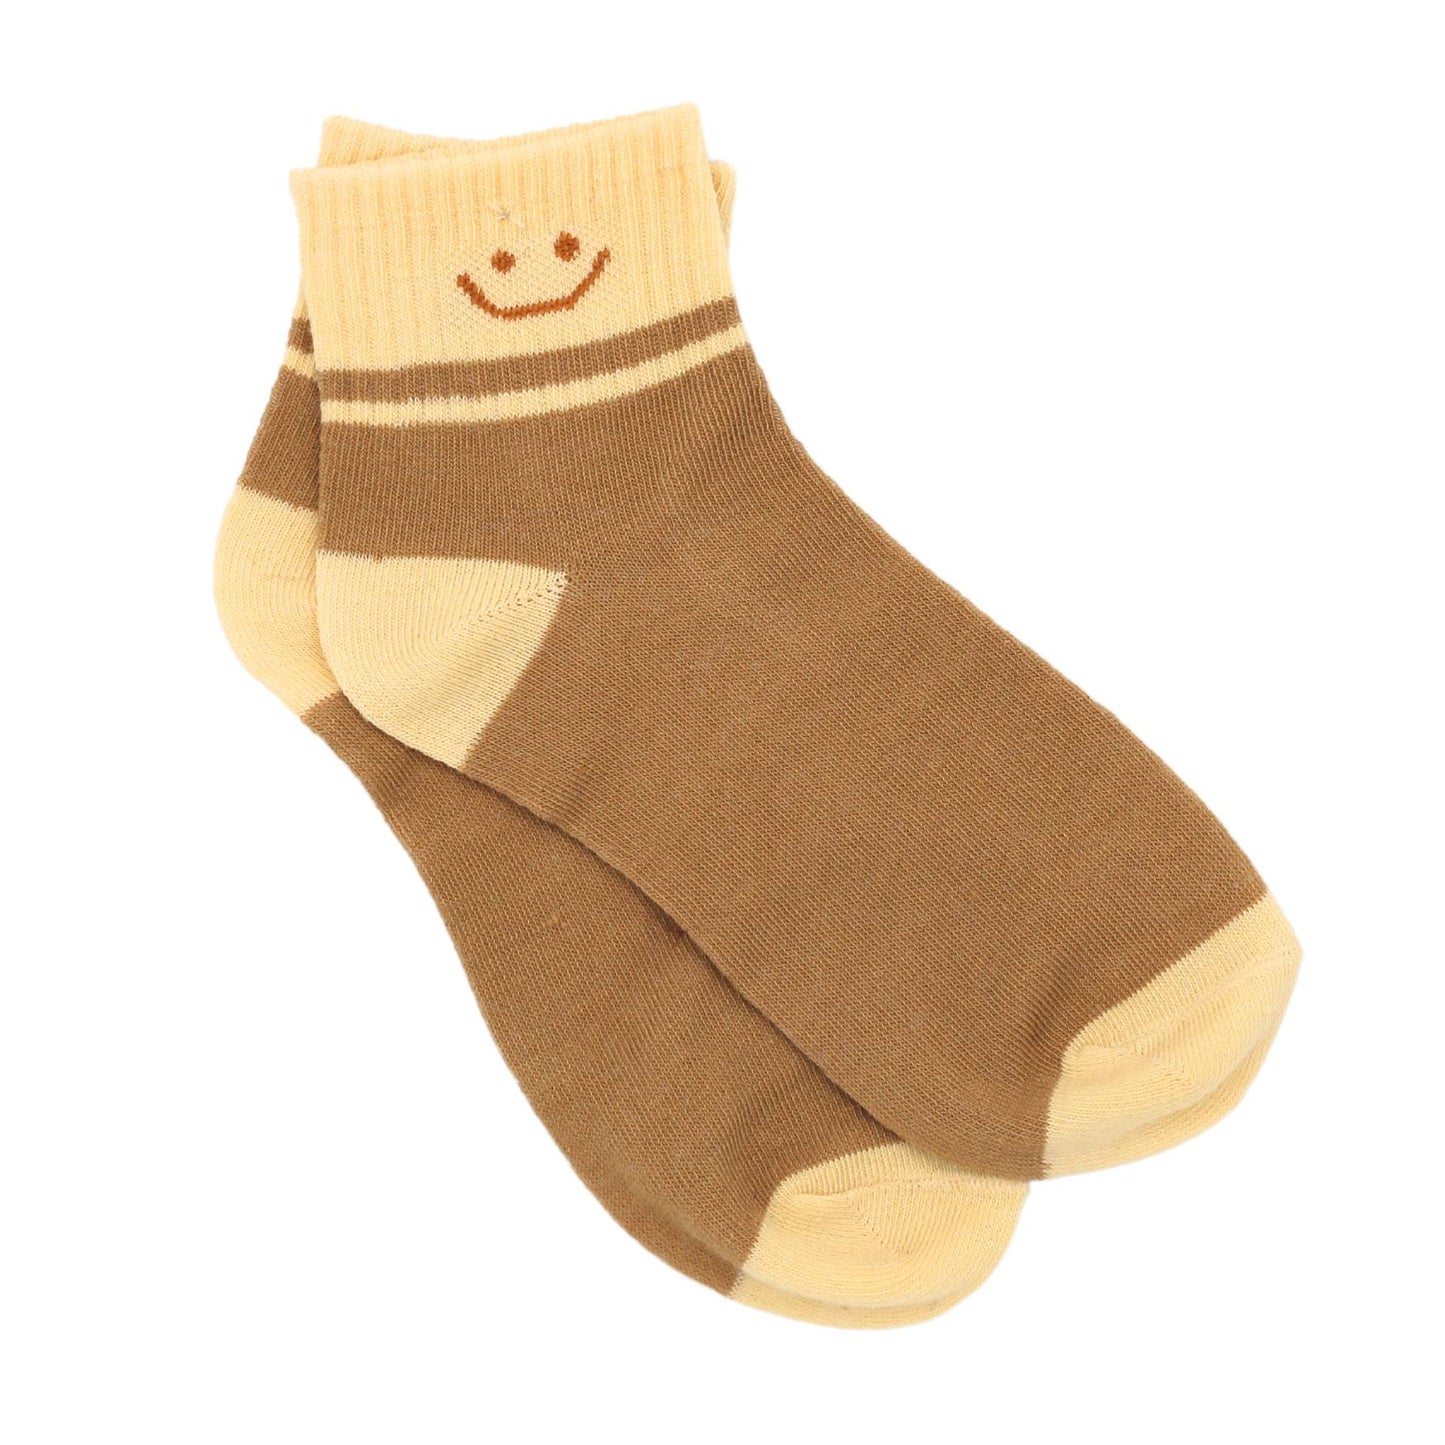 Baby Cubby Women's Crew Smiley Assortment Socks - Beige Top Color Block